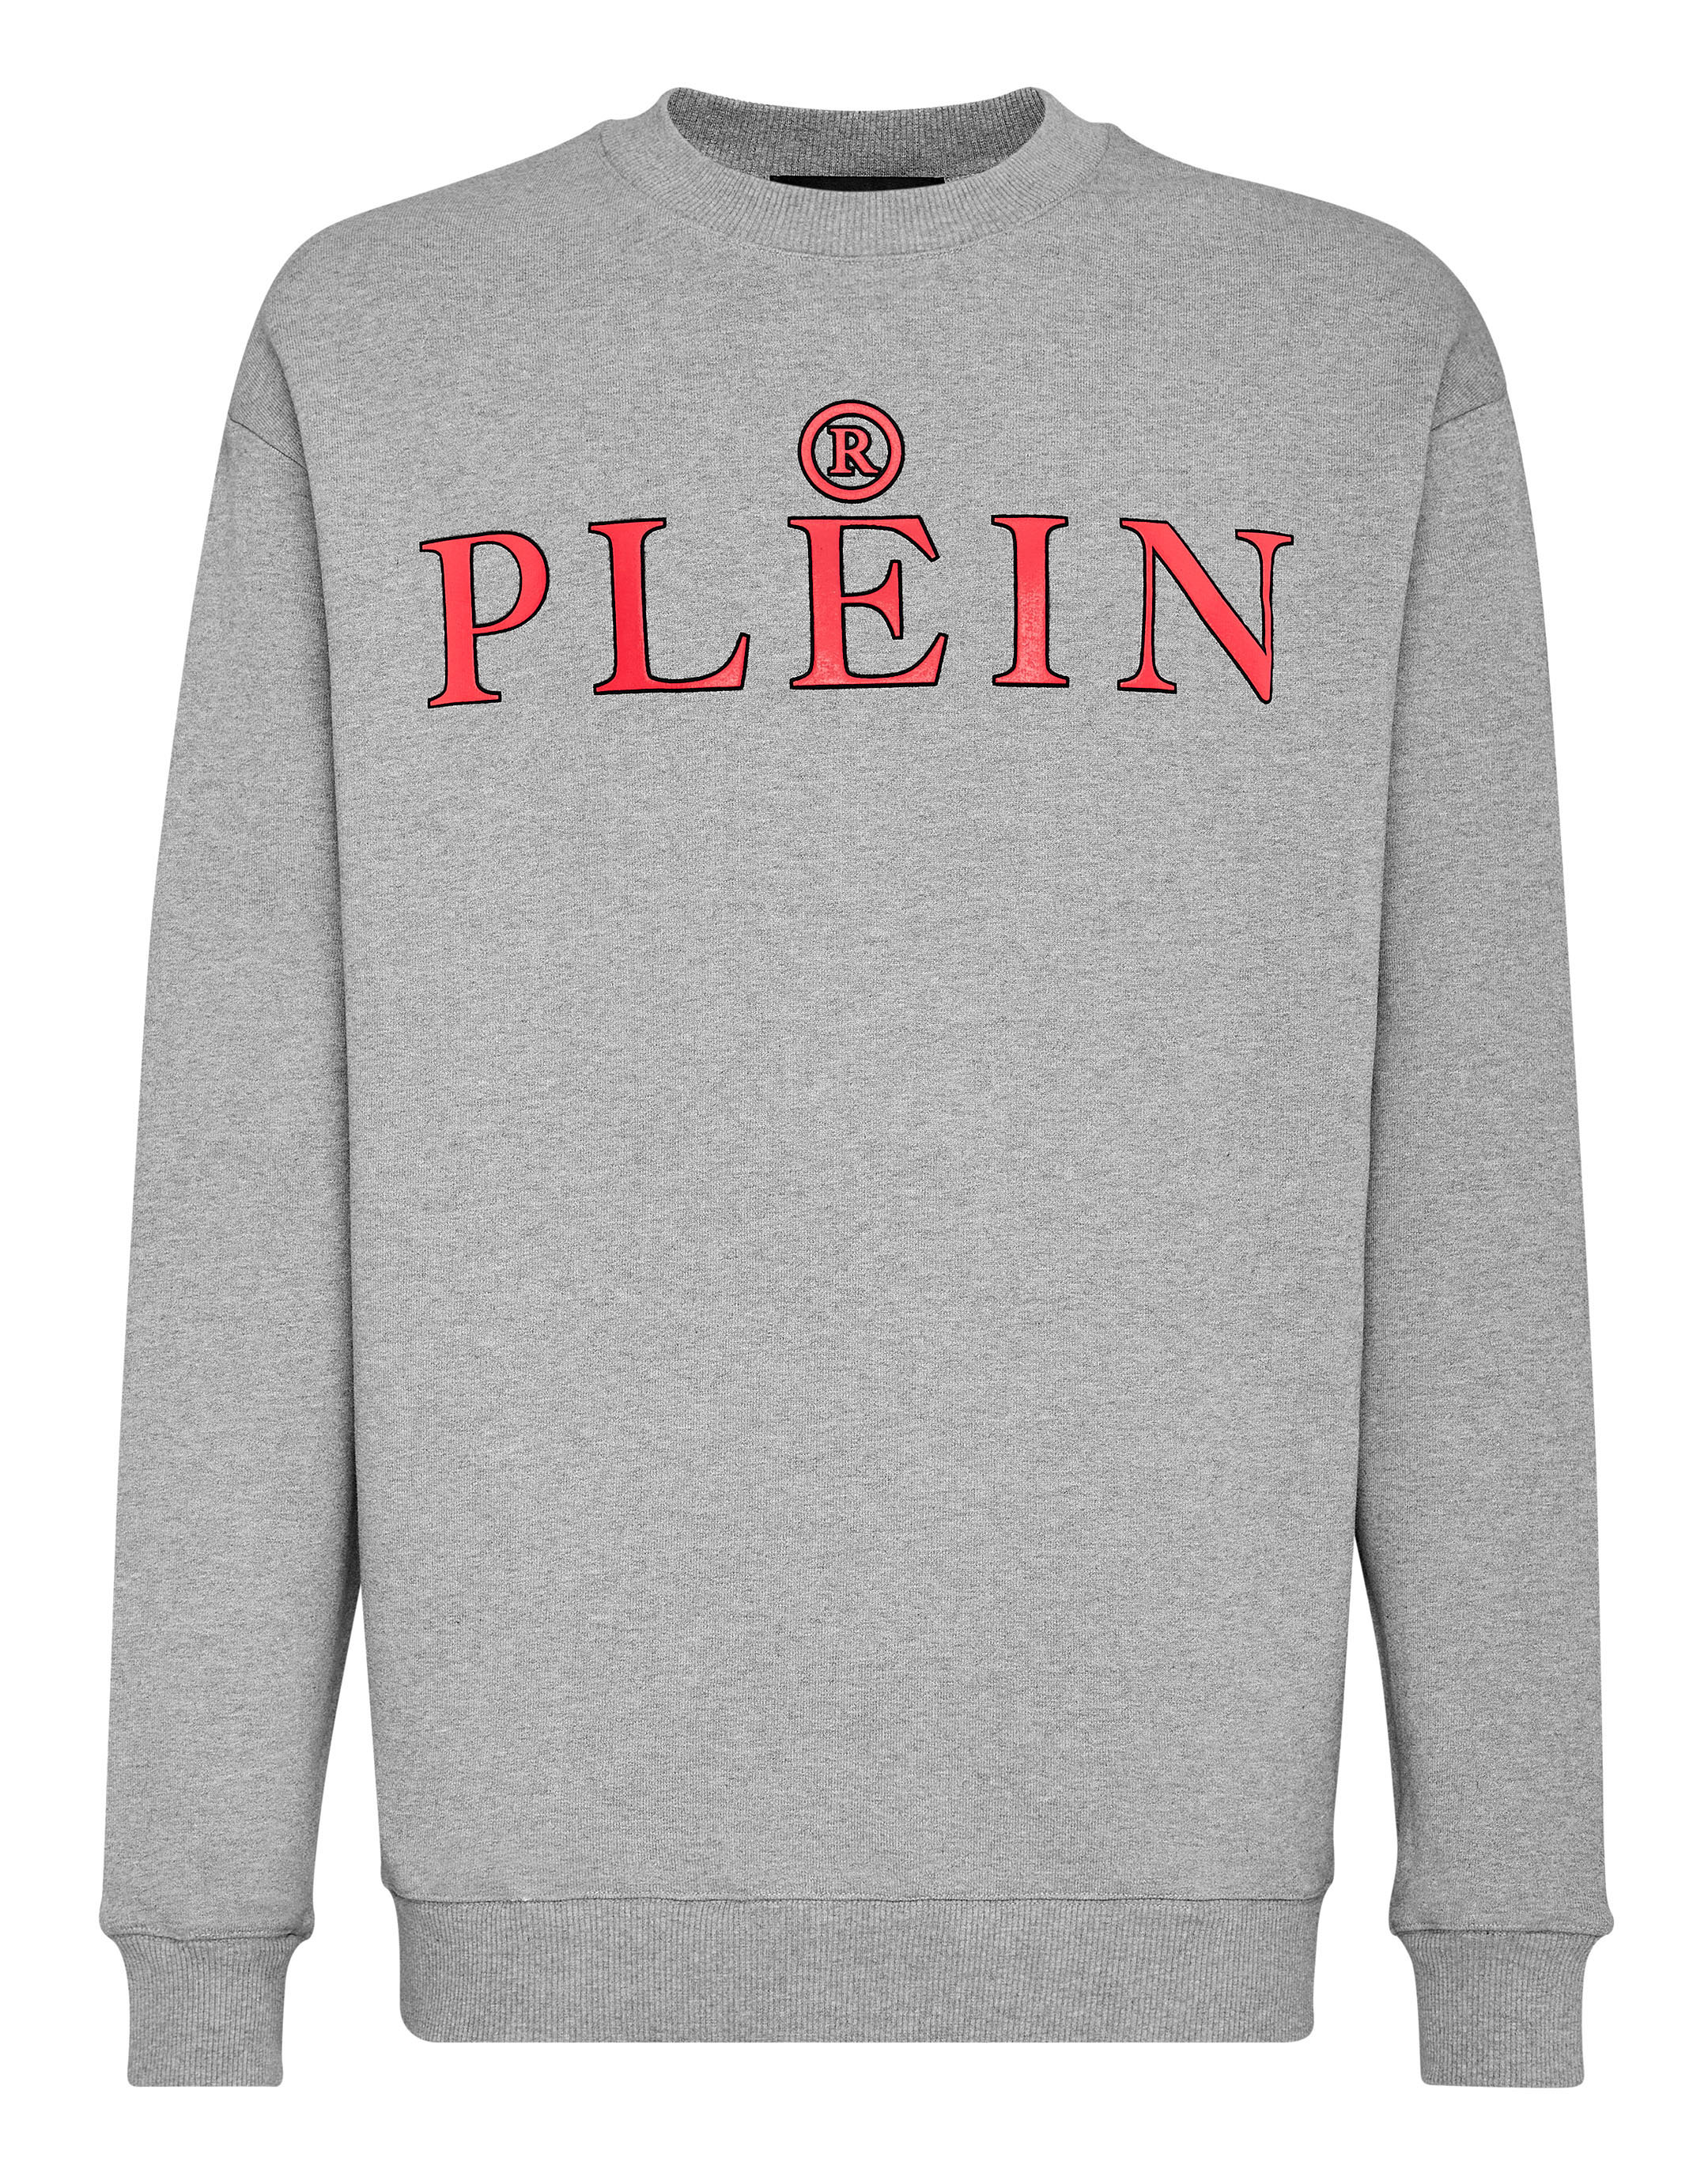 Sweatshirt LS Philipp Plein TM | Philipp Plein Outlet